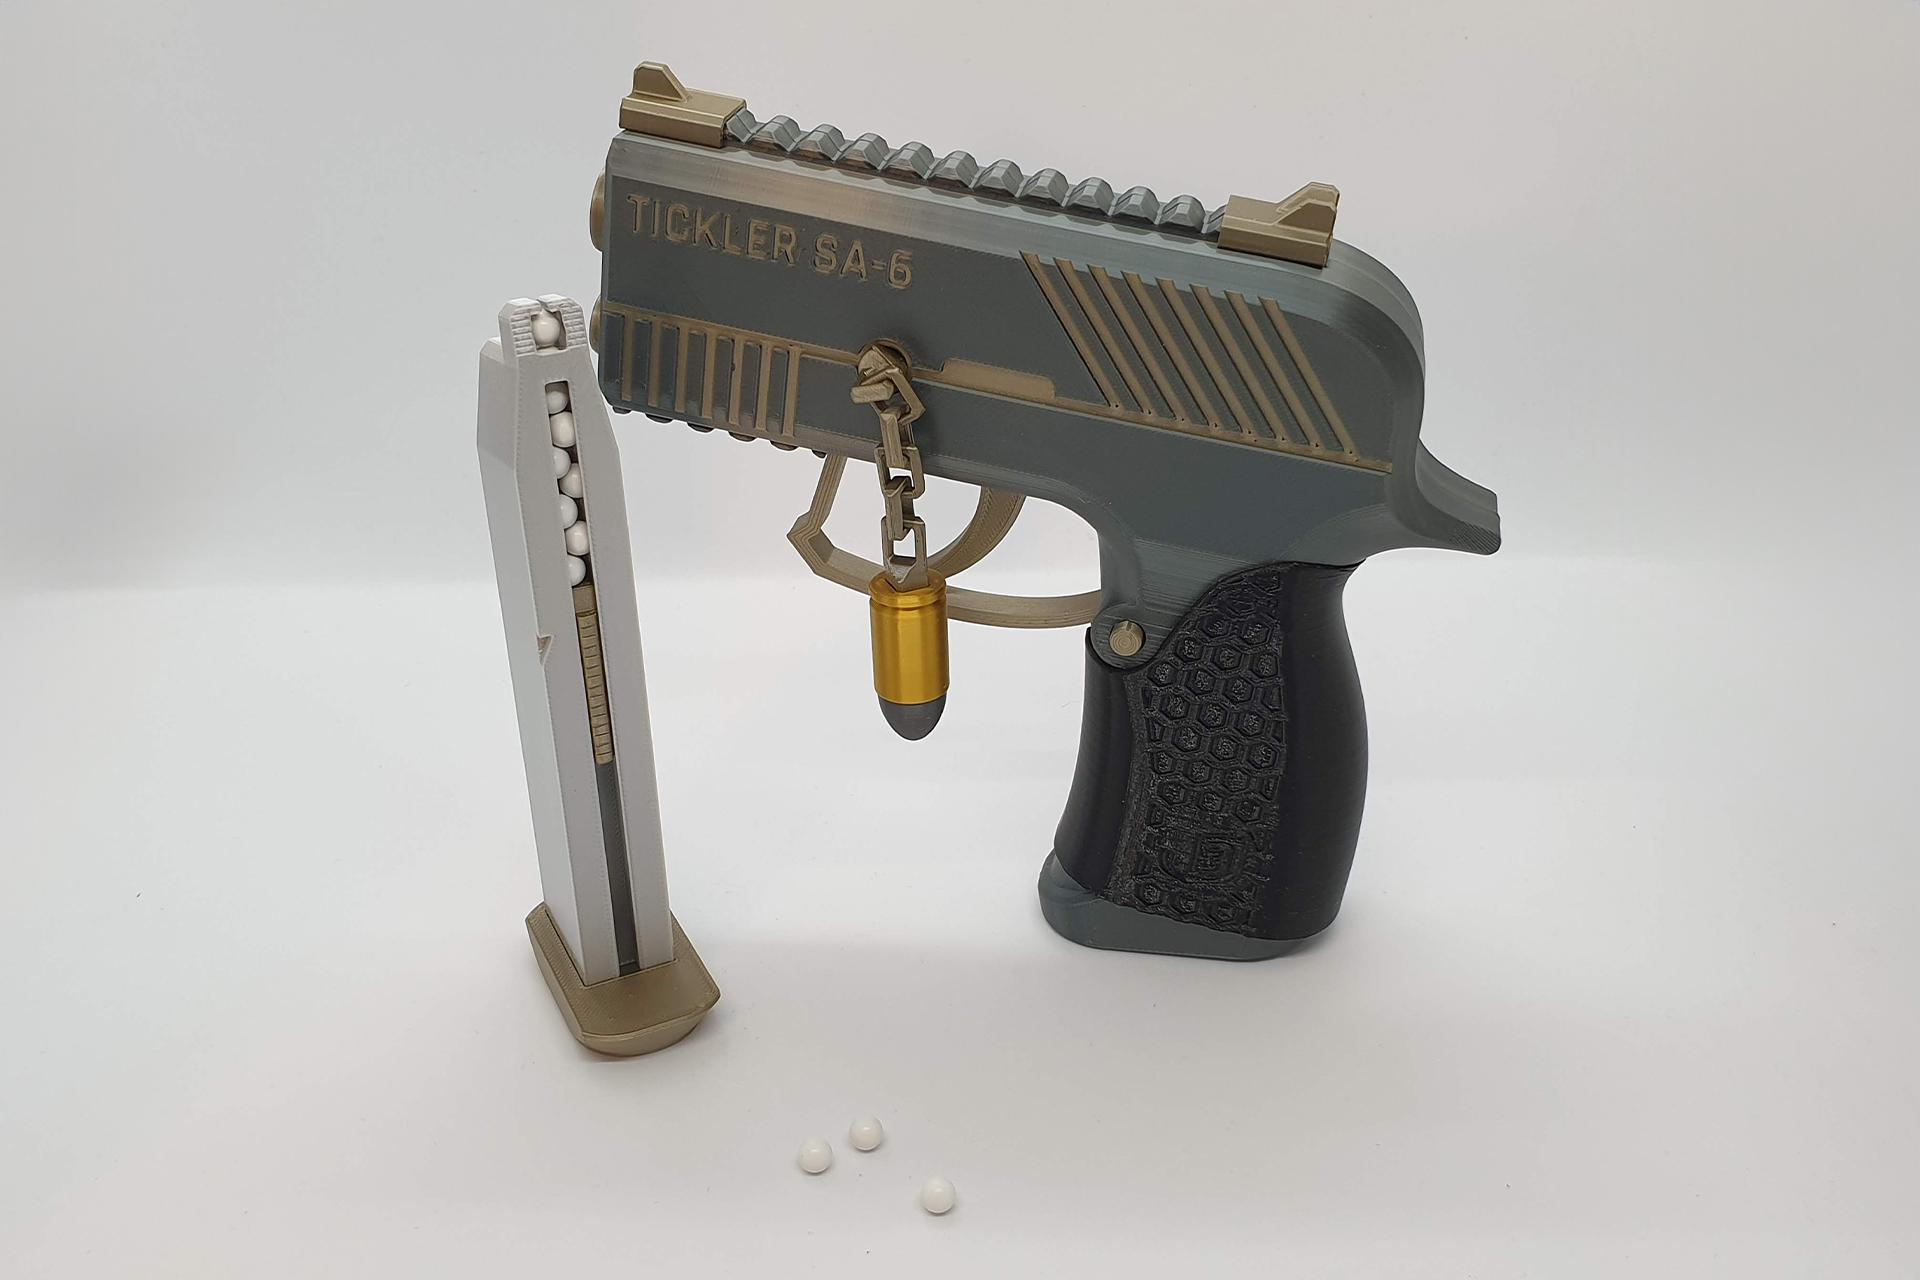 NEW RELEASE: Tickler SA-6 — semi-auto airsoft pistol